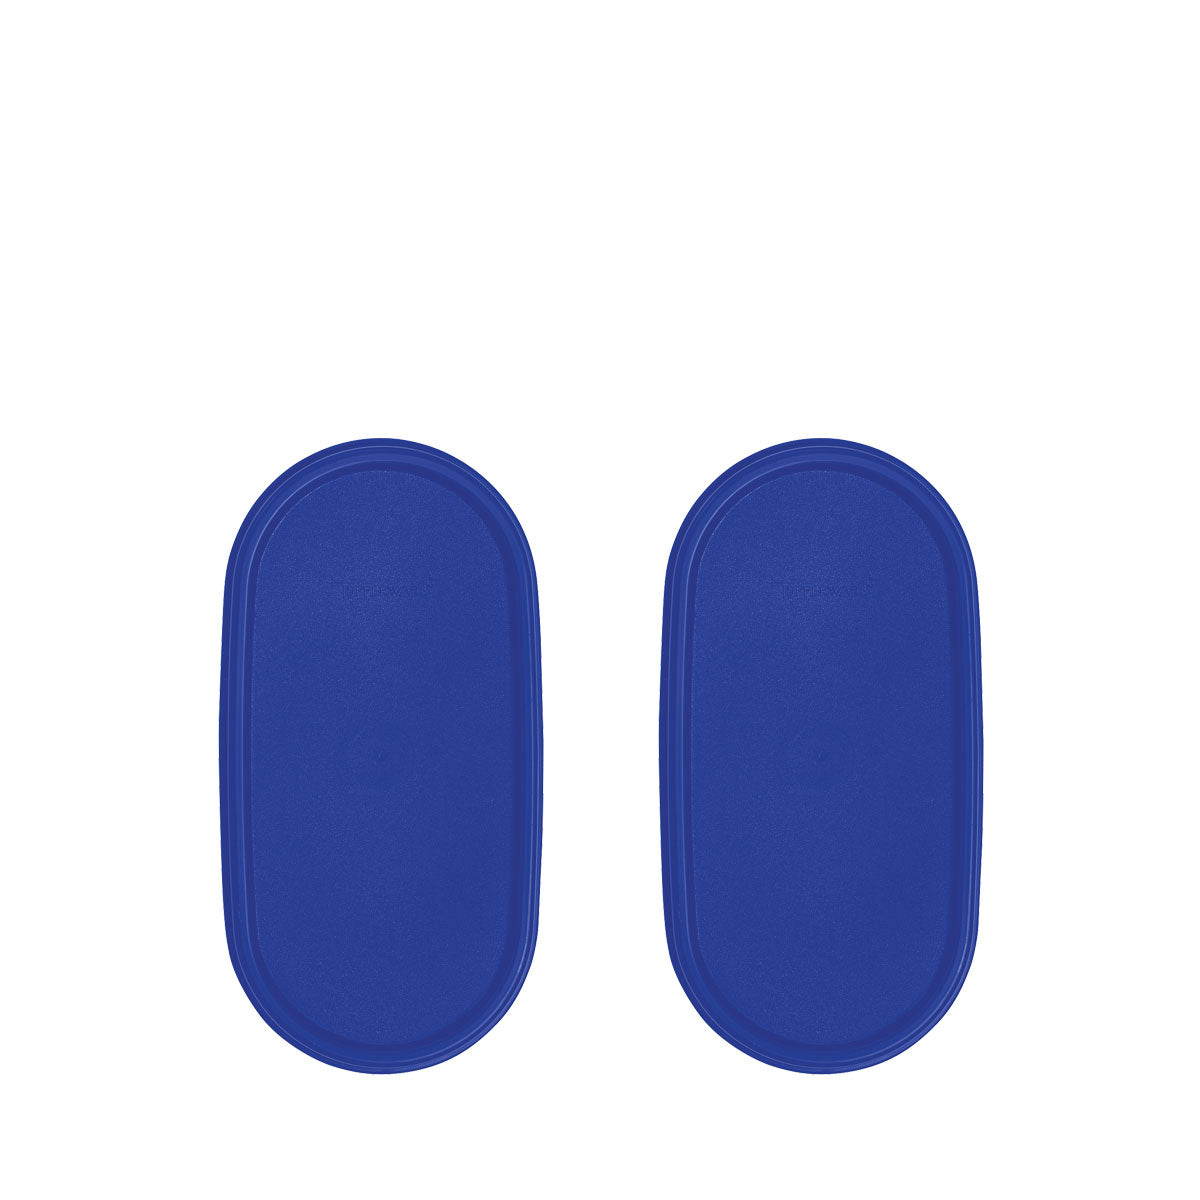 Modular Mates® Junta ovalada-Azul Klein (Juego de 2)